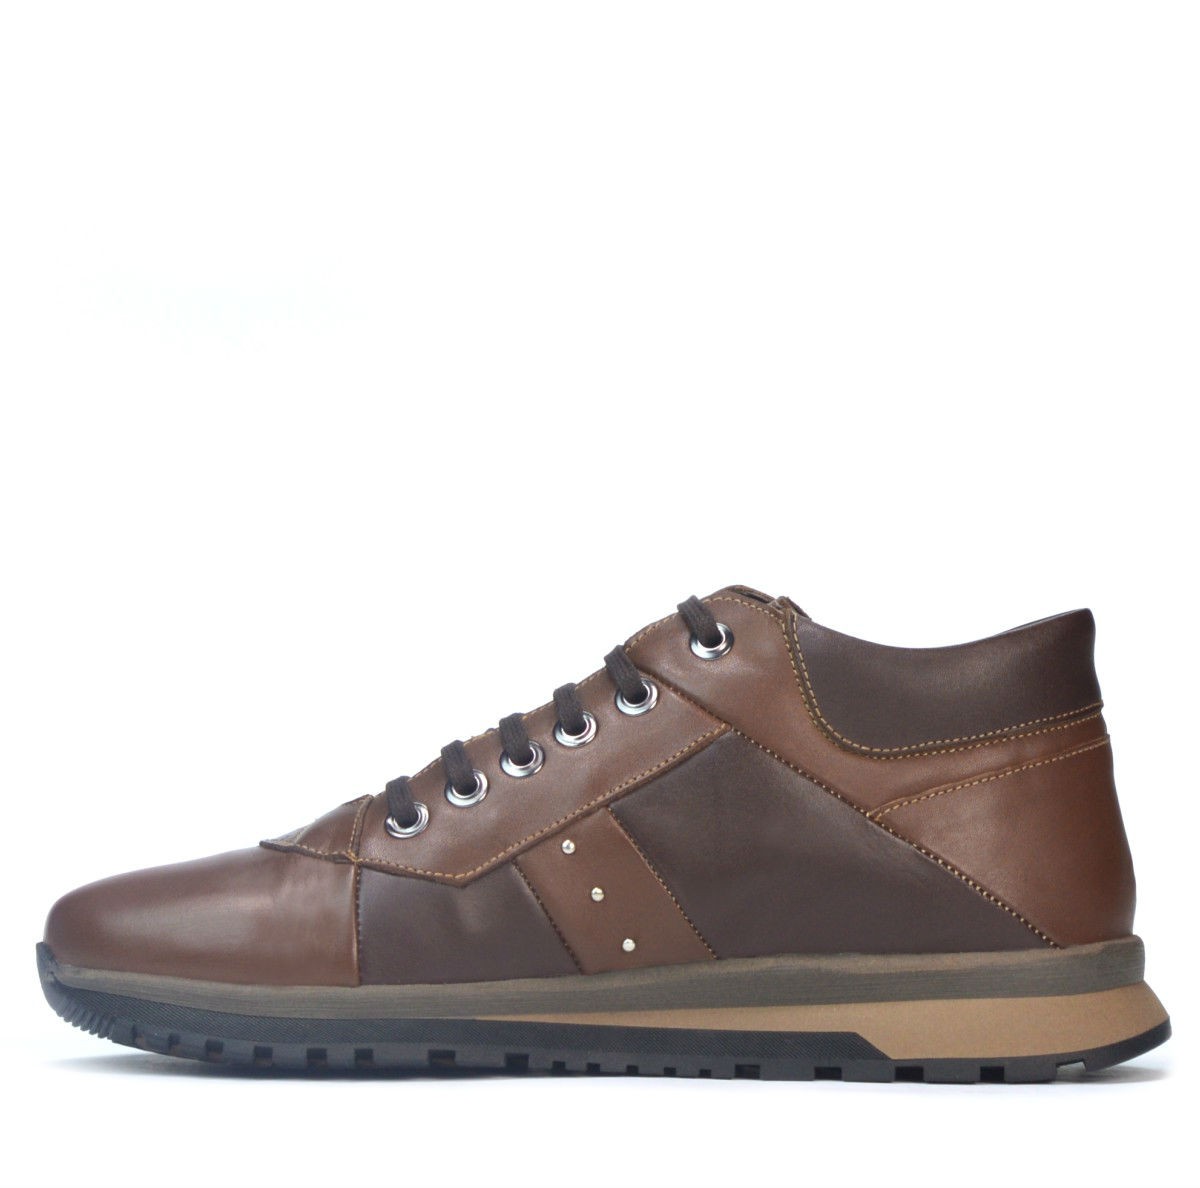 Pantofi casual barbati 4110 brown+cafe price 299 lei - Marelbo